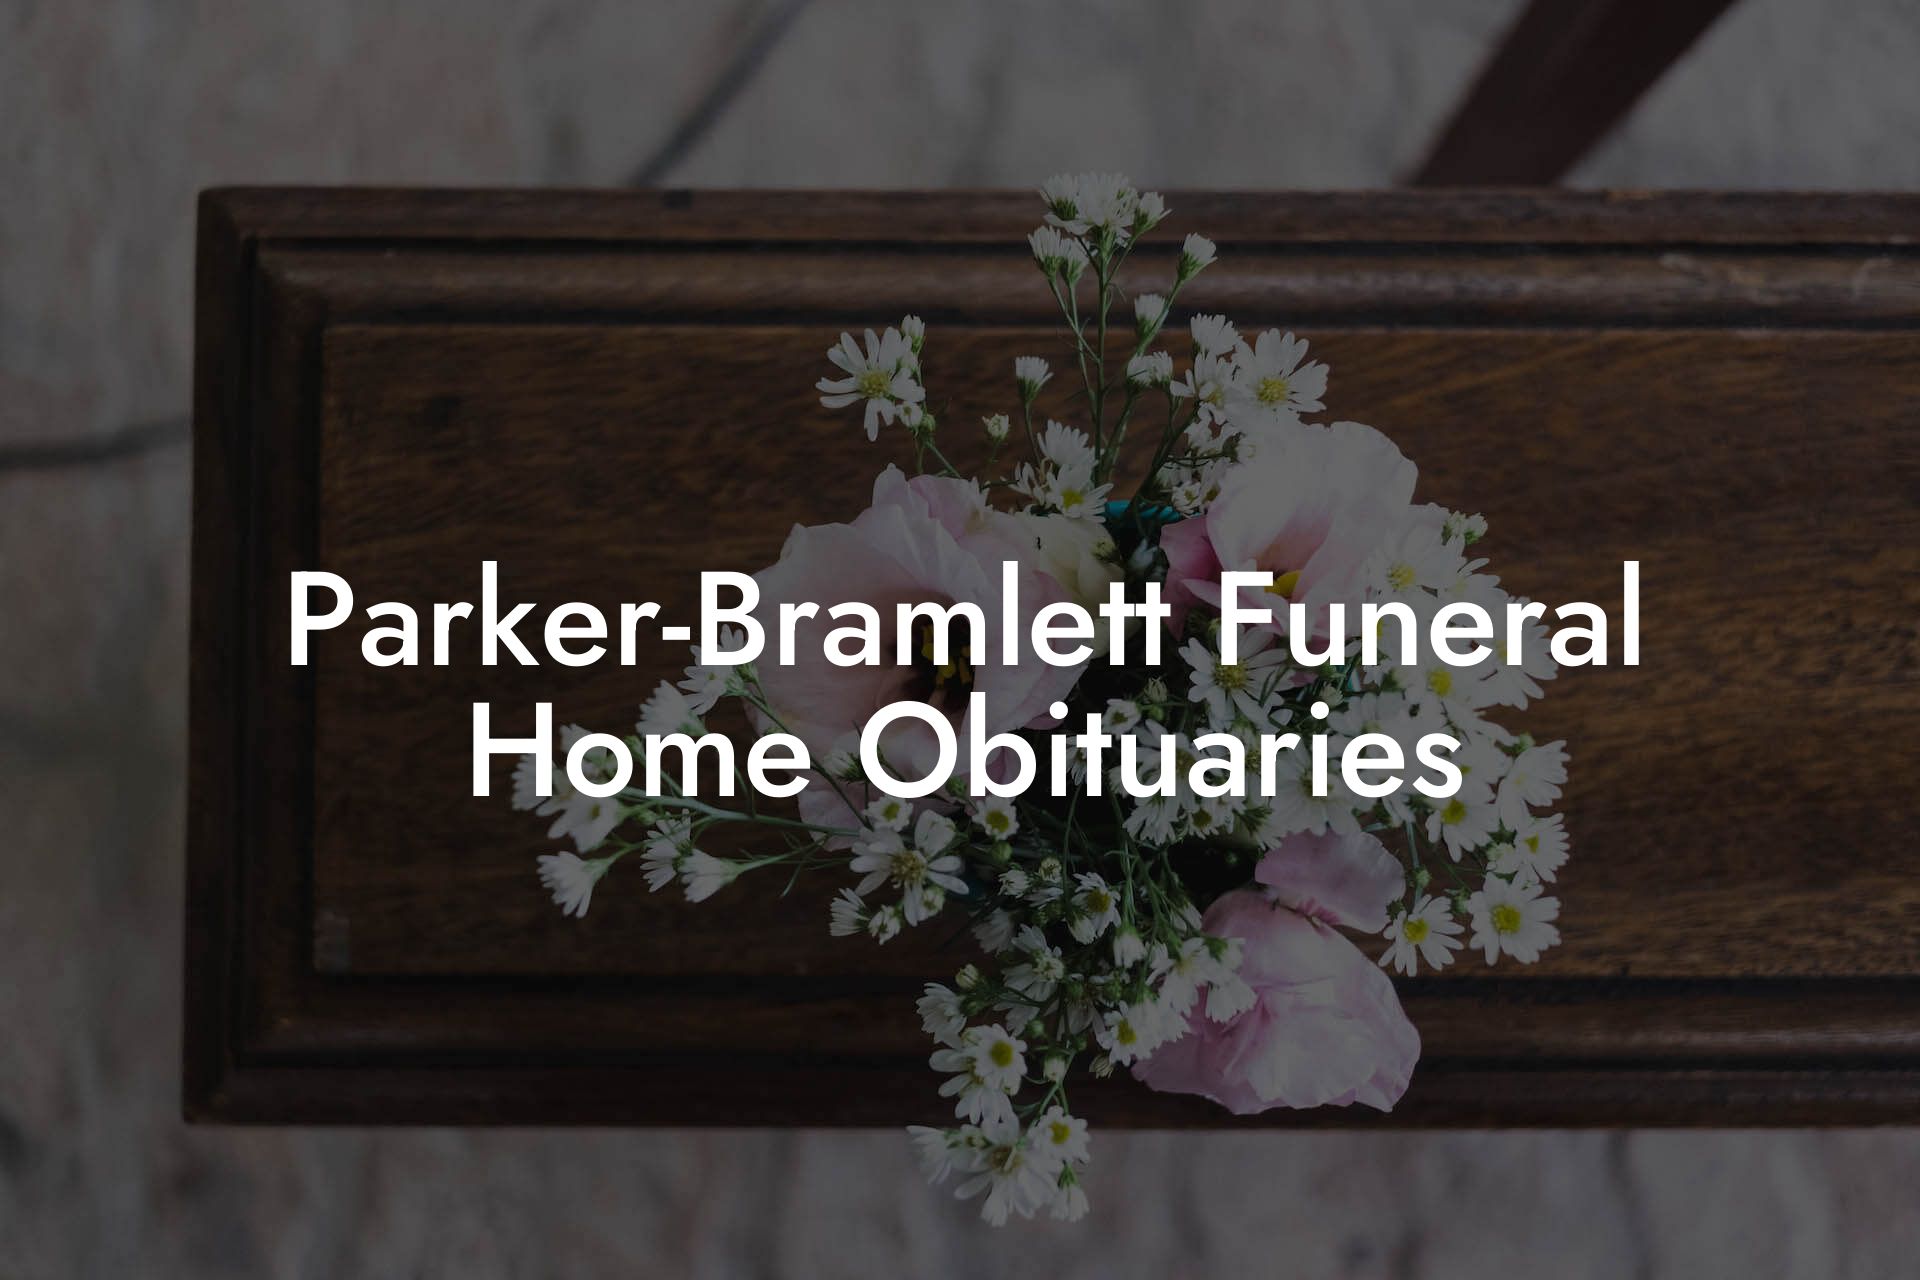 Parker-Bramlett Funeral Home Obituaries